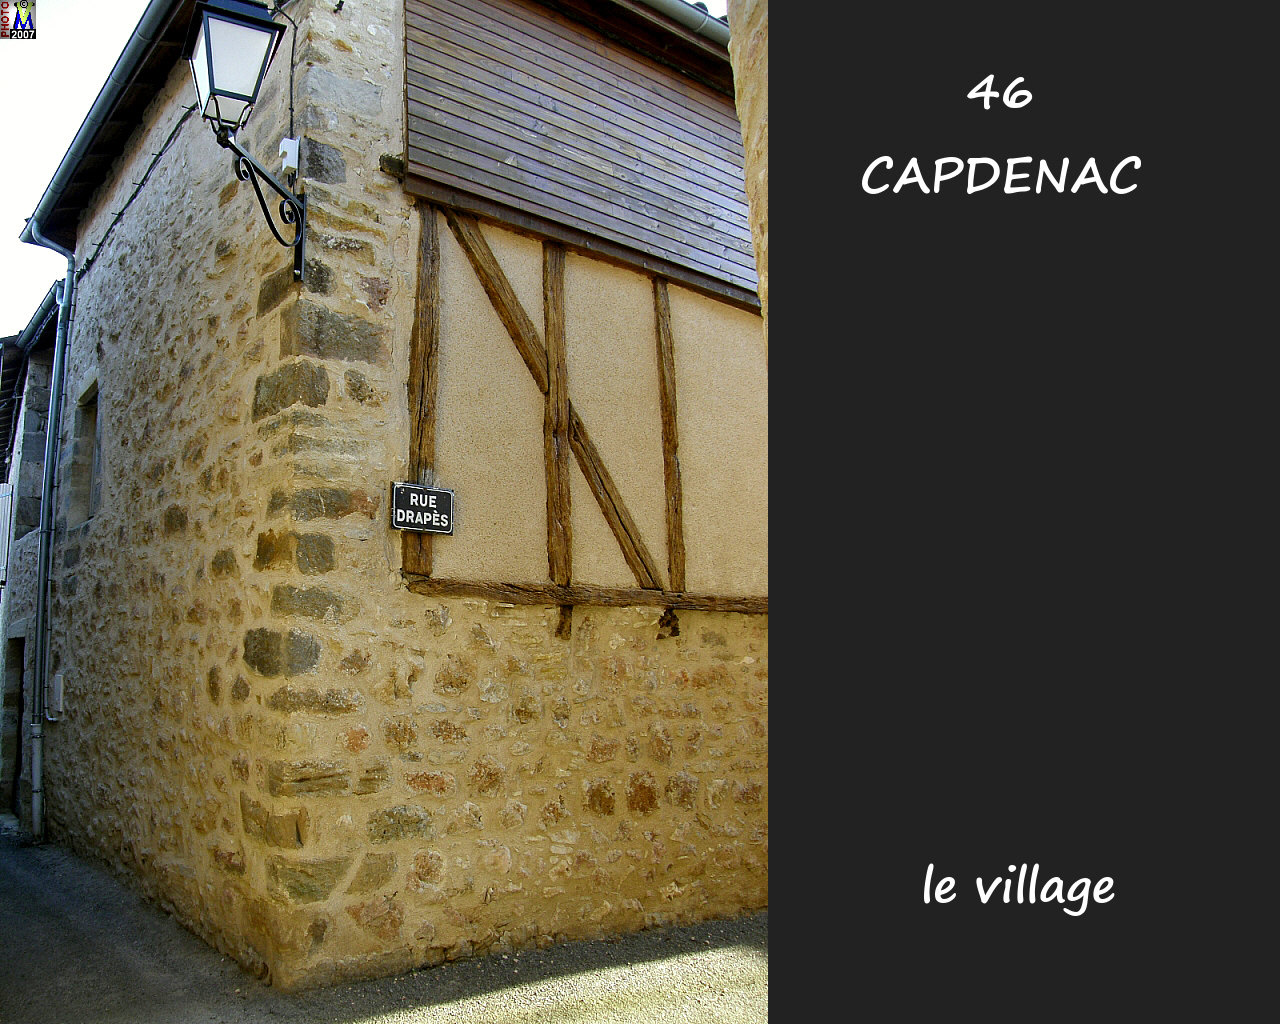 46CAPDENAC_village_124.jpg